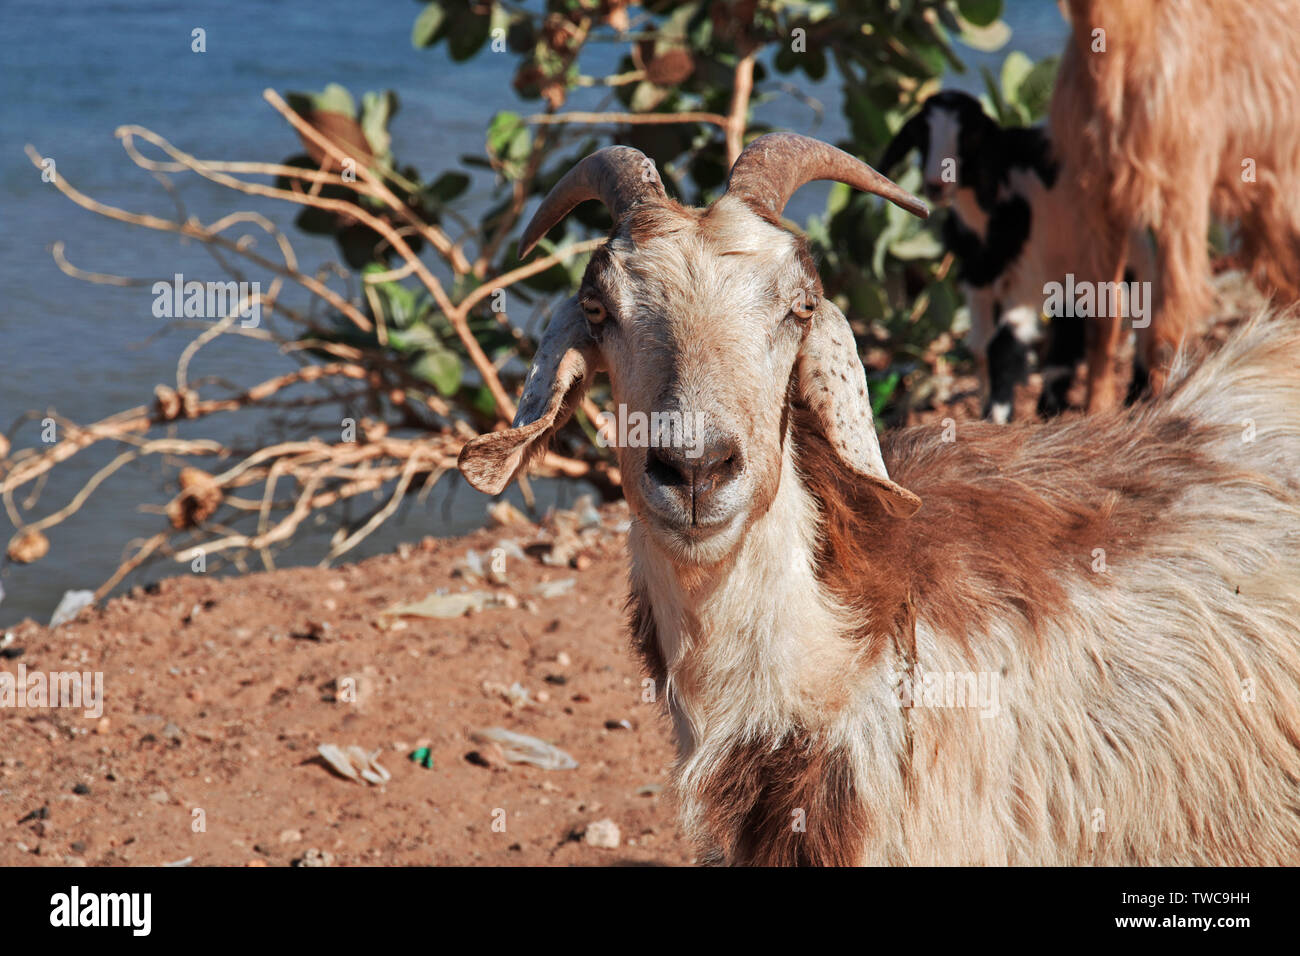 Goat by the Nile river, Khartoum, Sudan Stock Photo